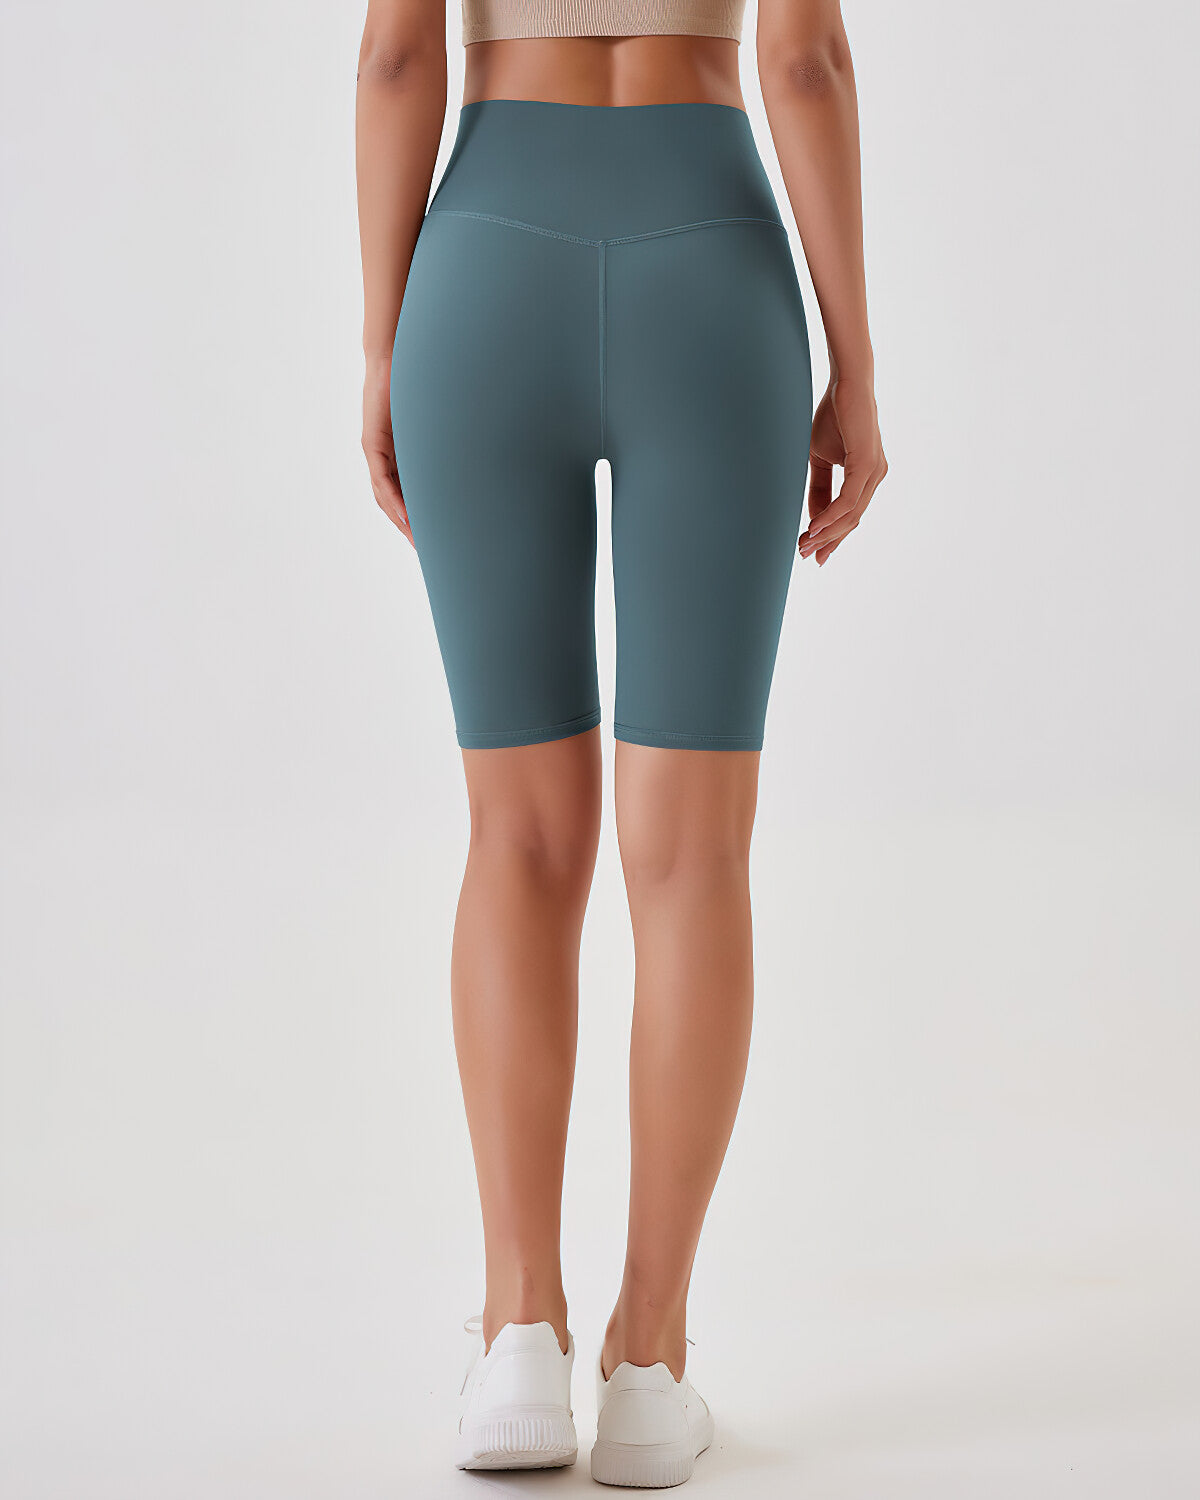 Lara Seamless Biker Shorts - Cutty Sark